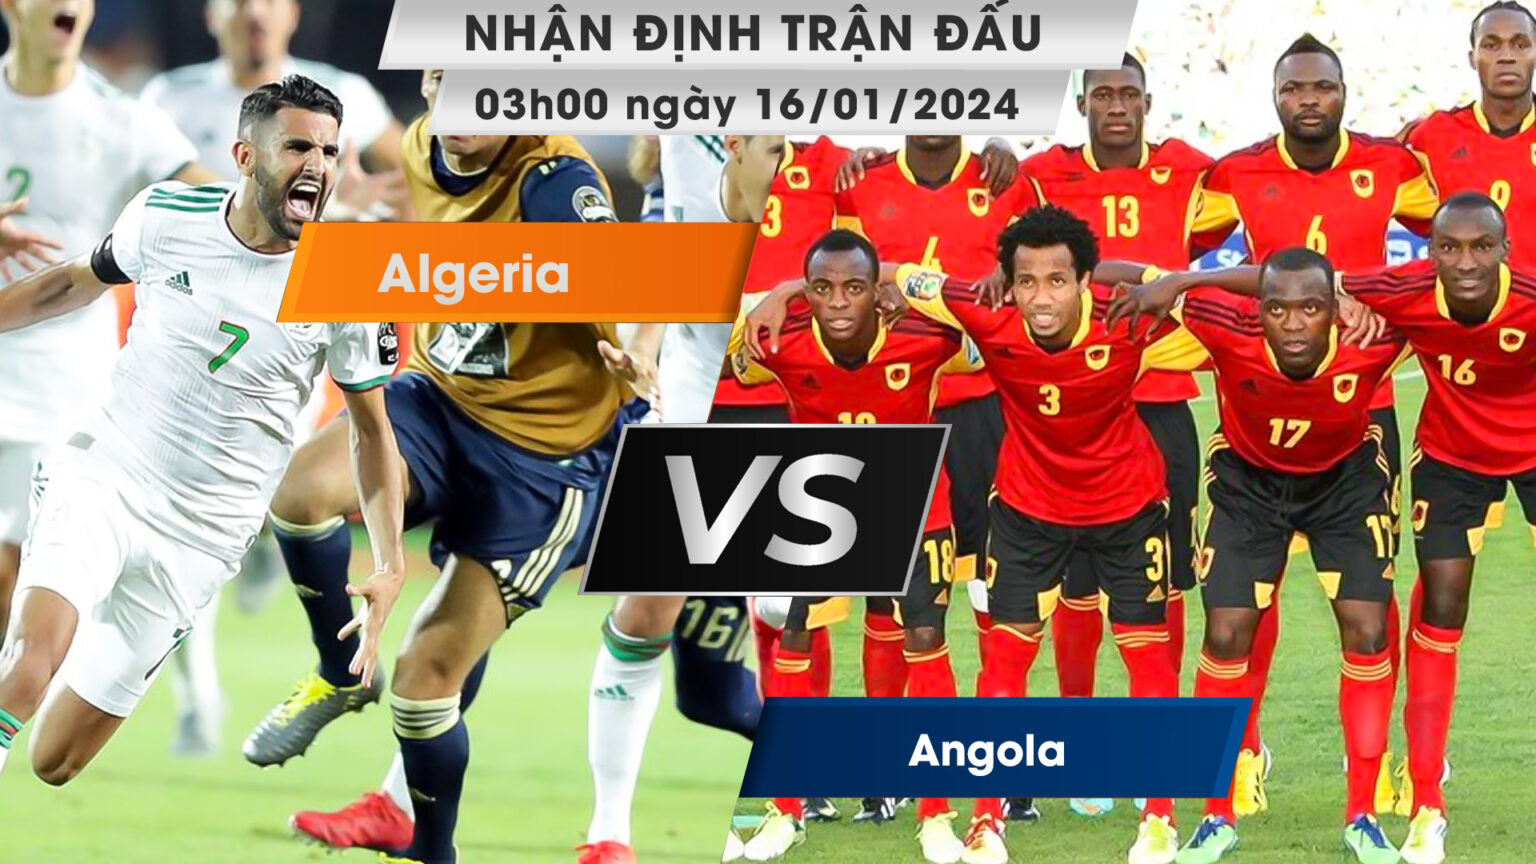 Nhận định, dự đoán Algeria vs Angola , 03h00 ngày 16/01/2024